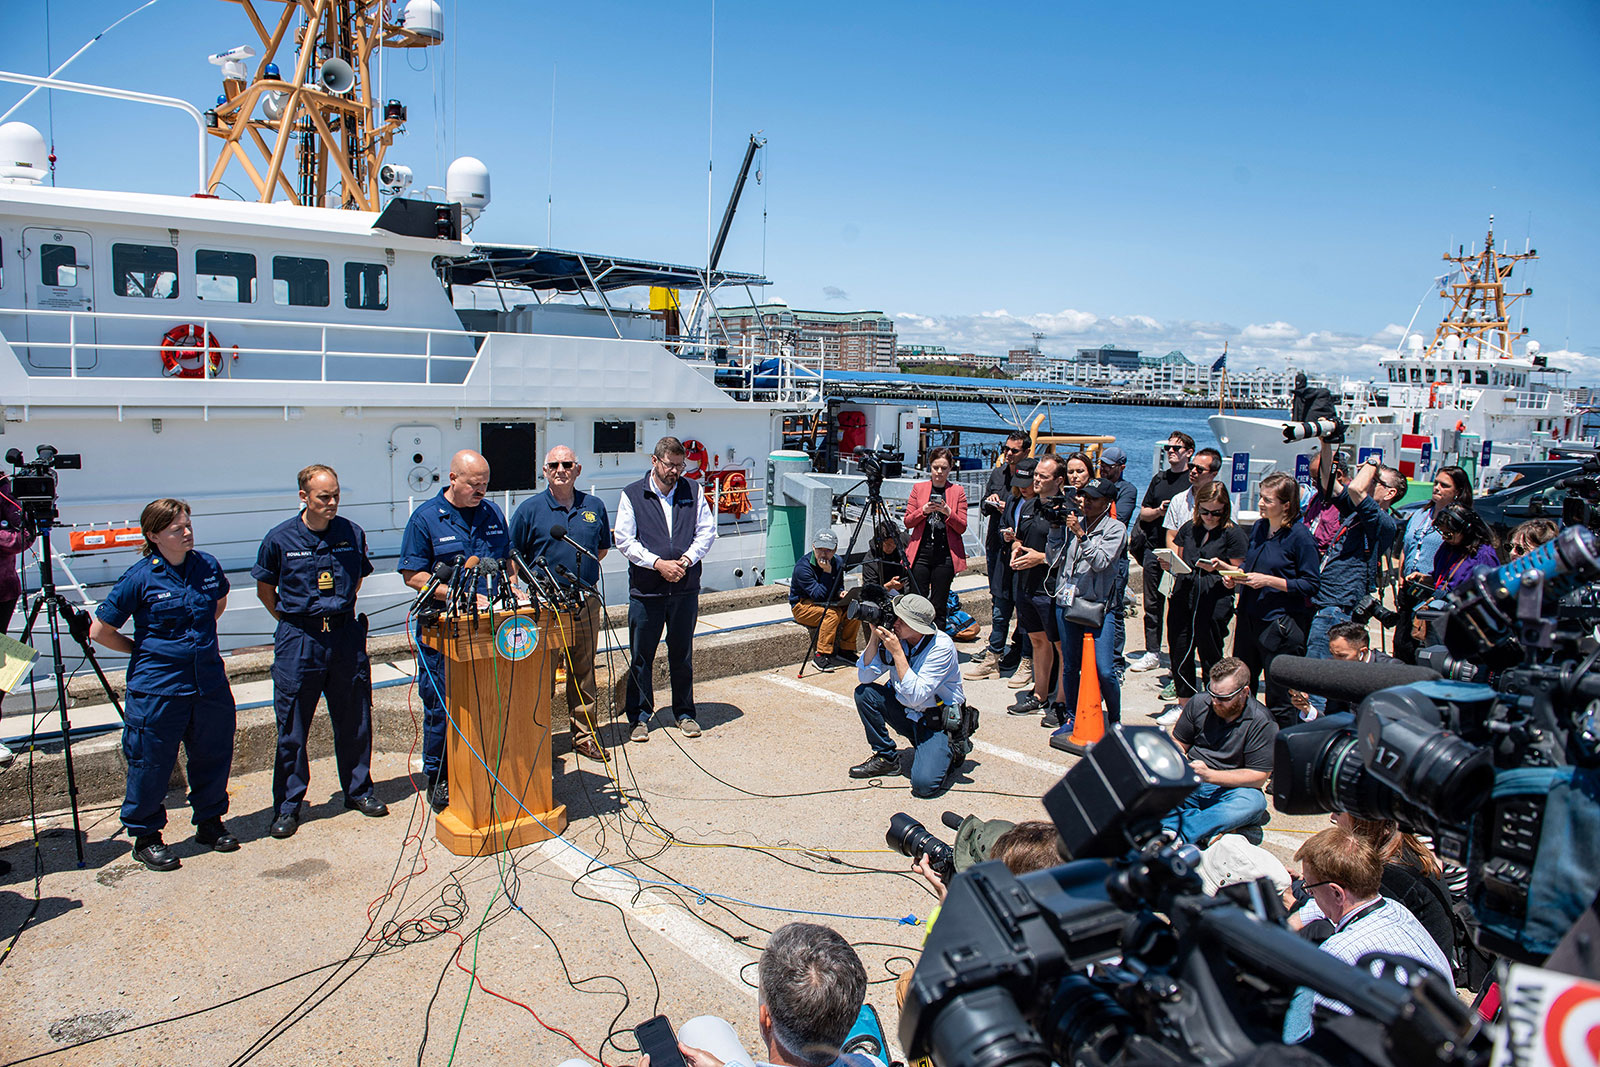 Conferencia de prensa de la Guardia Costera celebrada este miércoles, desde Boston, Massachusetts. (Crédito: JOSEPH PREZIOSO/AFP via Getty Images)